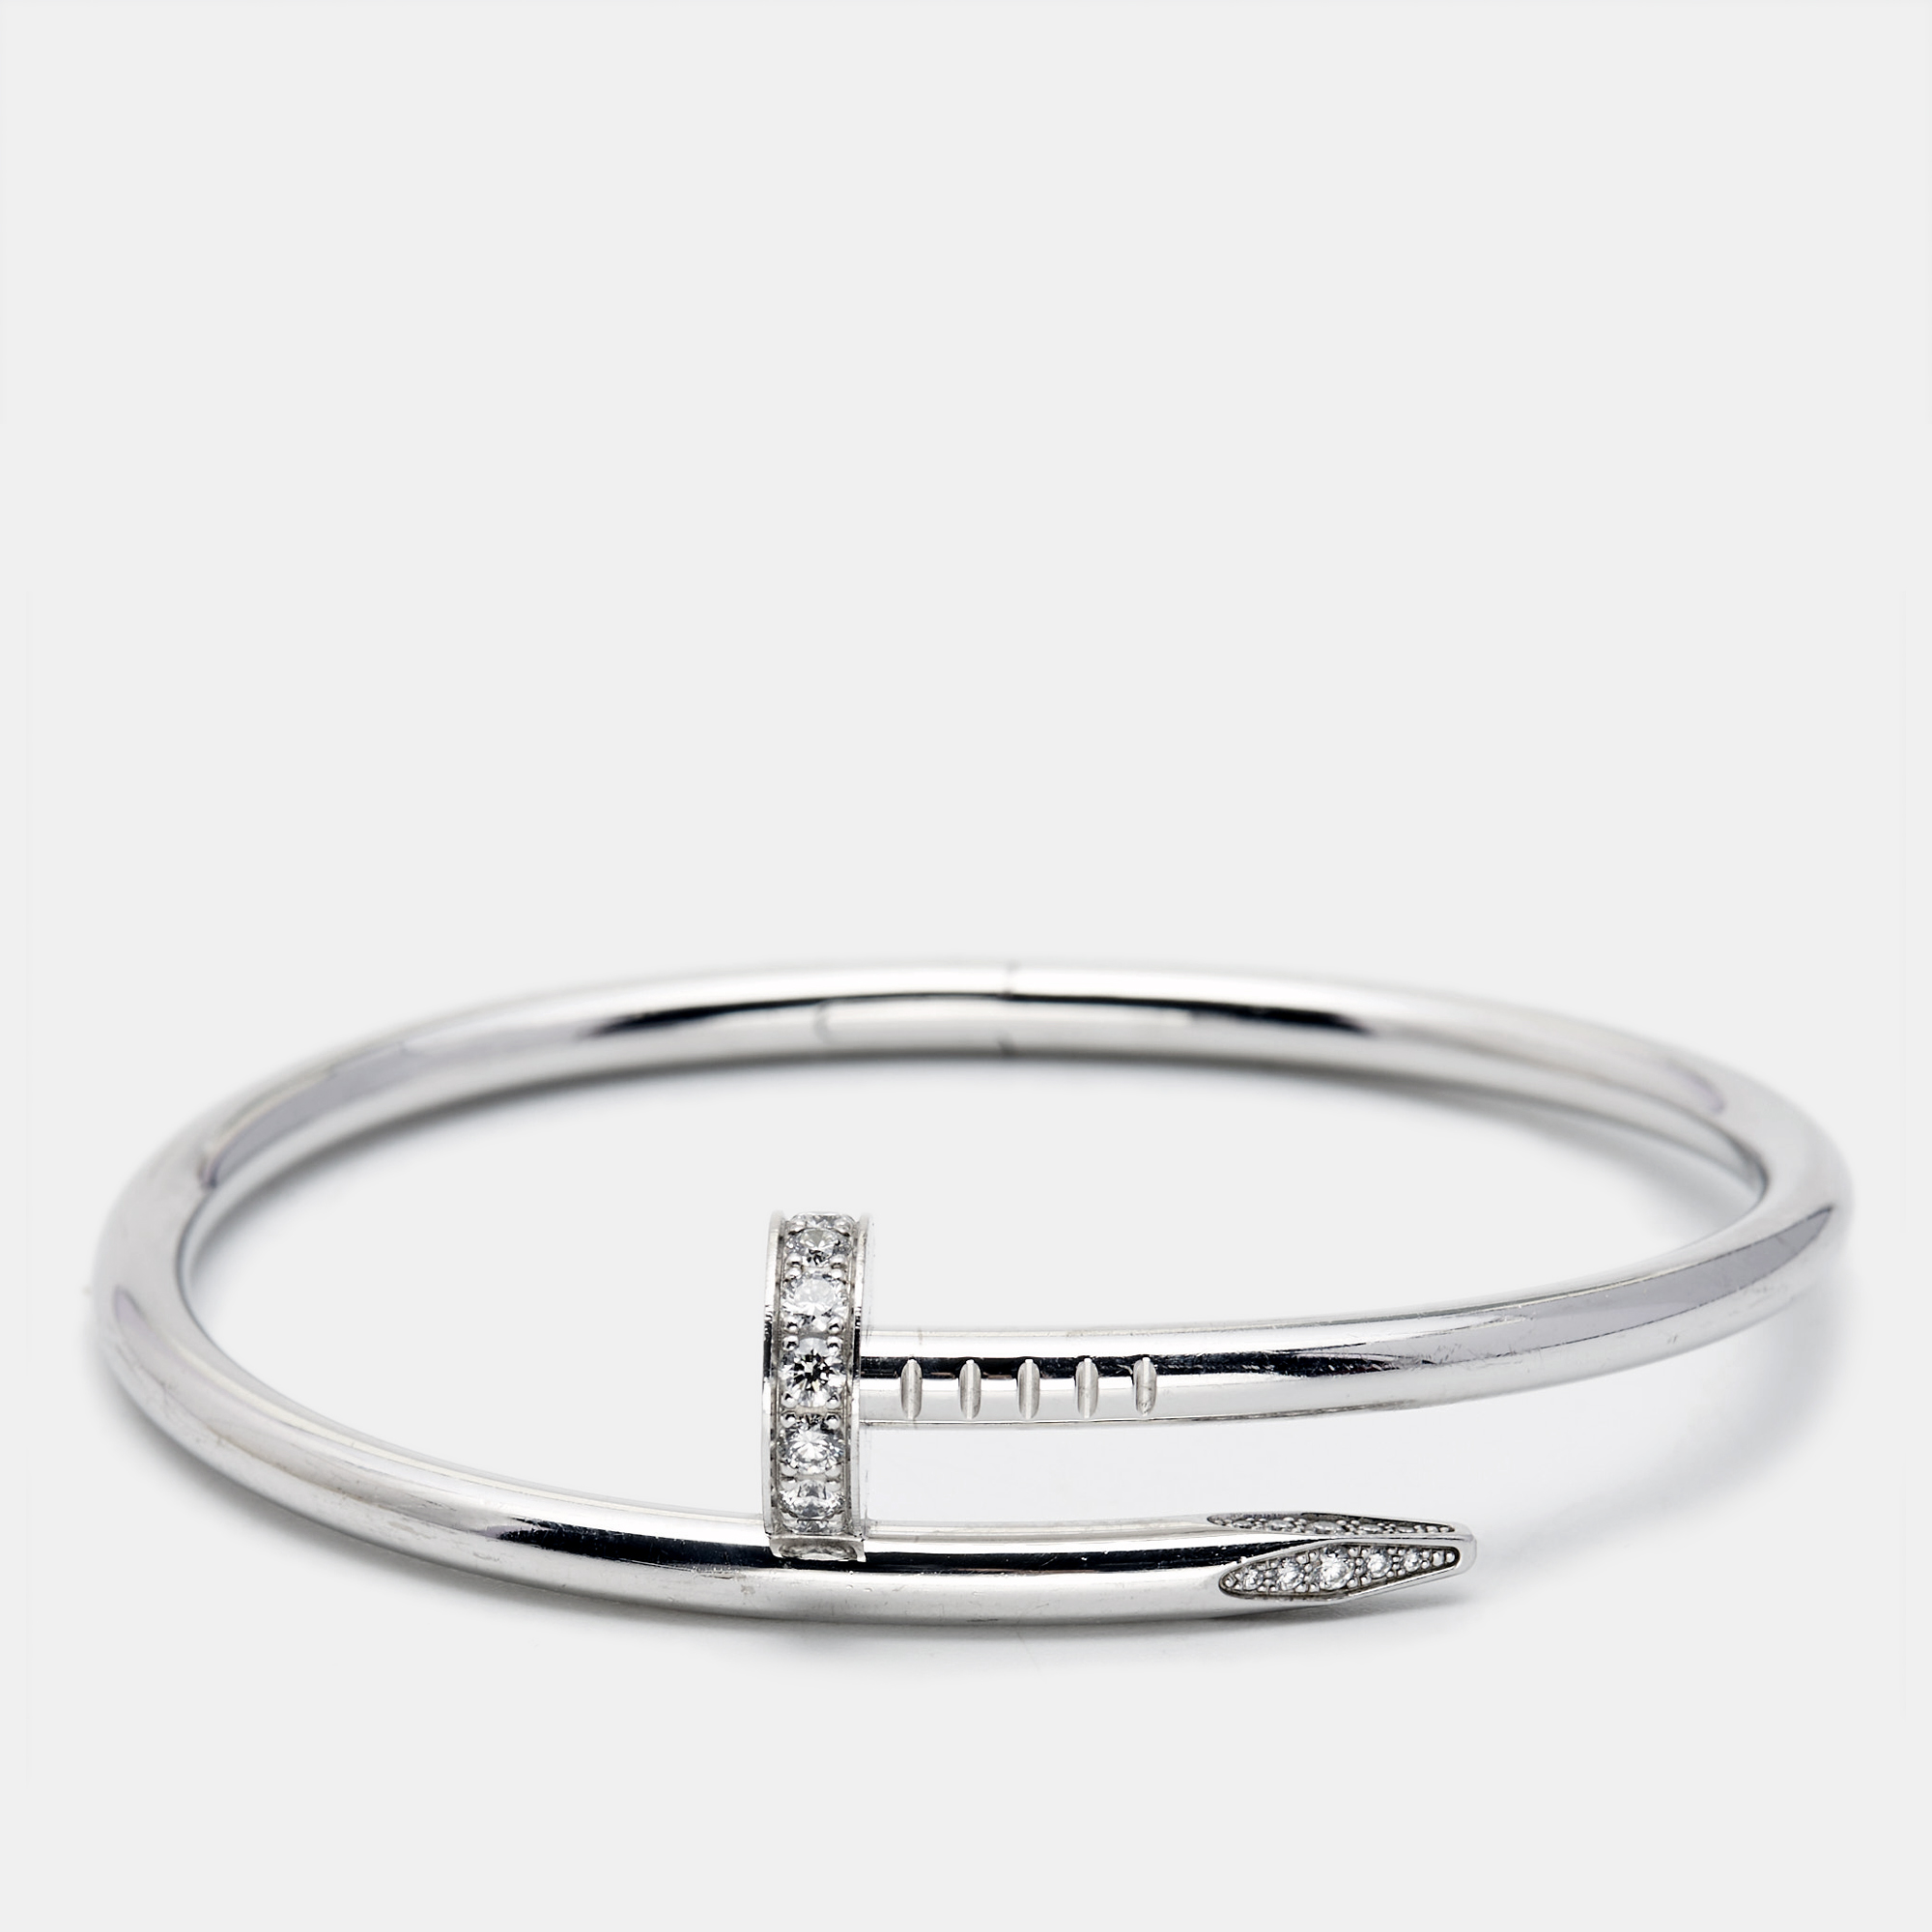 Cartier juste un clou diamonds 18k white gold bracelet 16